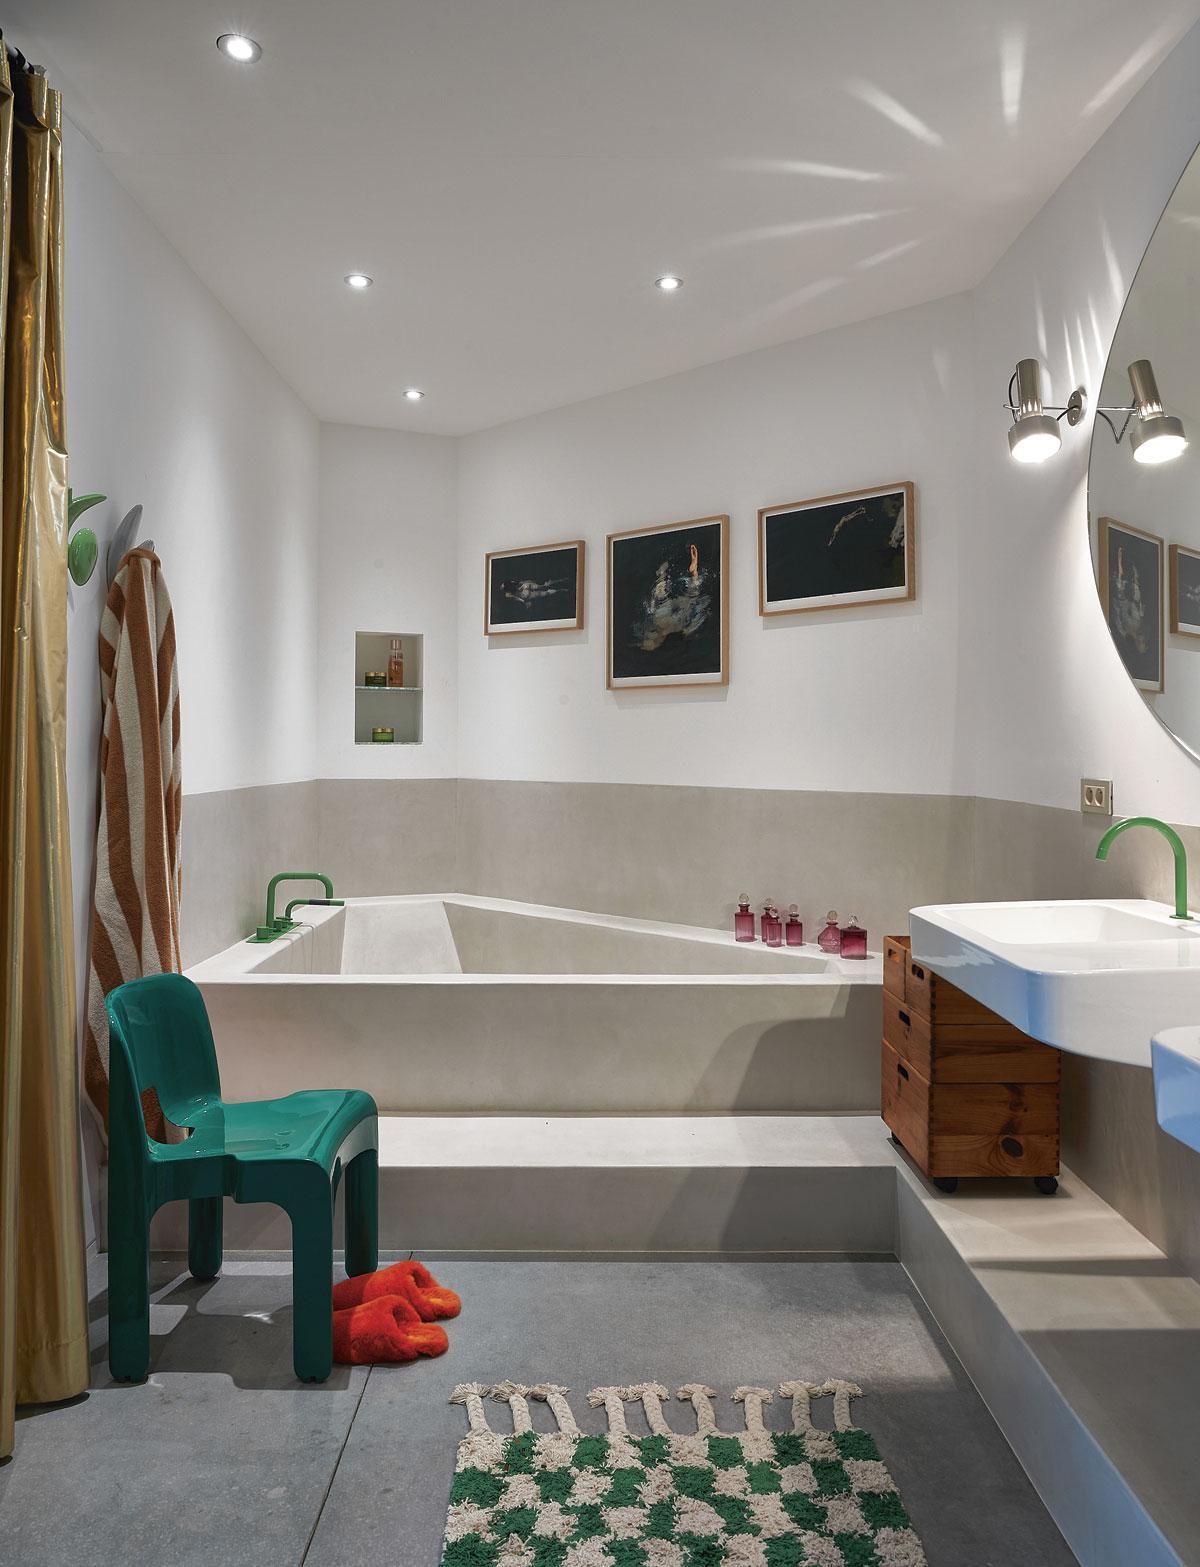 La salle de bains adjacente à la master bedroom est dotée d’une baignoire en Mortex réalisée sur mesure, qui sert aussi de douche.